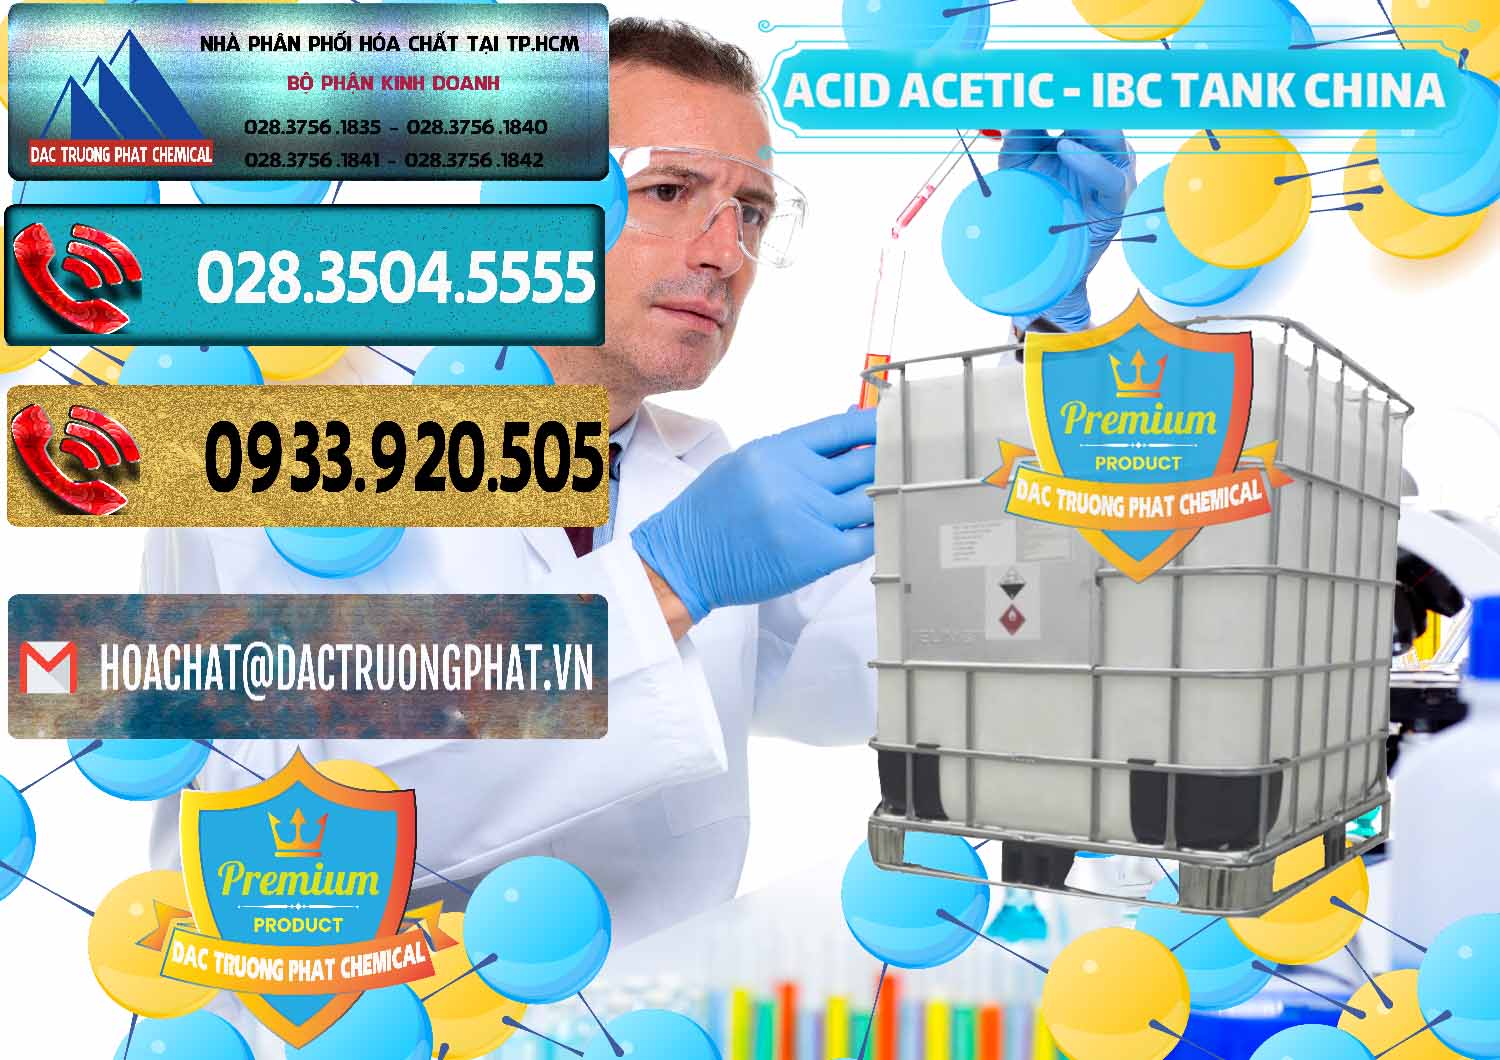 Cty chuyên bán _ cung ứng Acetic Acid – Axit Acetic Tank Bồn IBC Trung Quốc China - 0443 - Cung cấp - phân phối hóa chất tại TP.HCM - hoachatdetnhuom.com